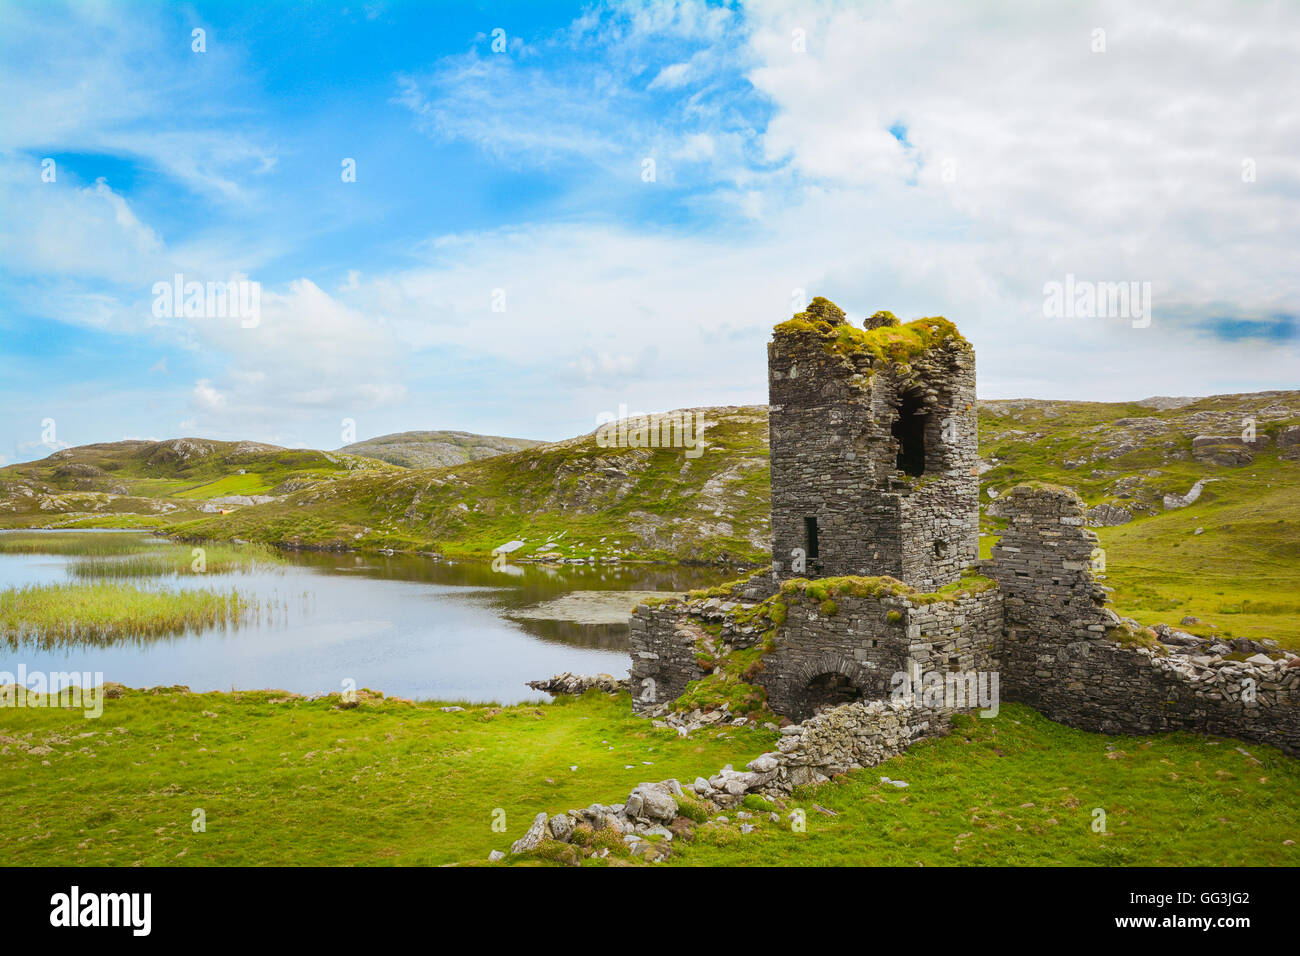 Espectáculo escénico de Dunlough Castillo, también conocido como "Tres Castillos de cabeza", la península de Mizen, Irlanda Foto de stock